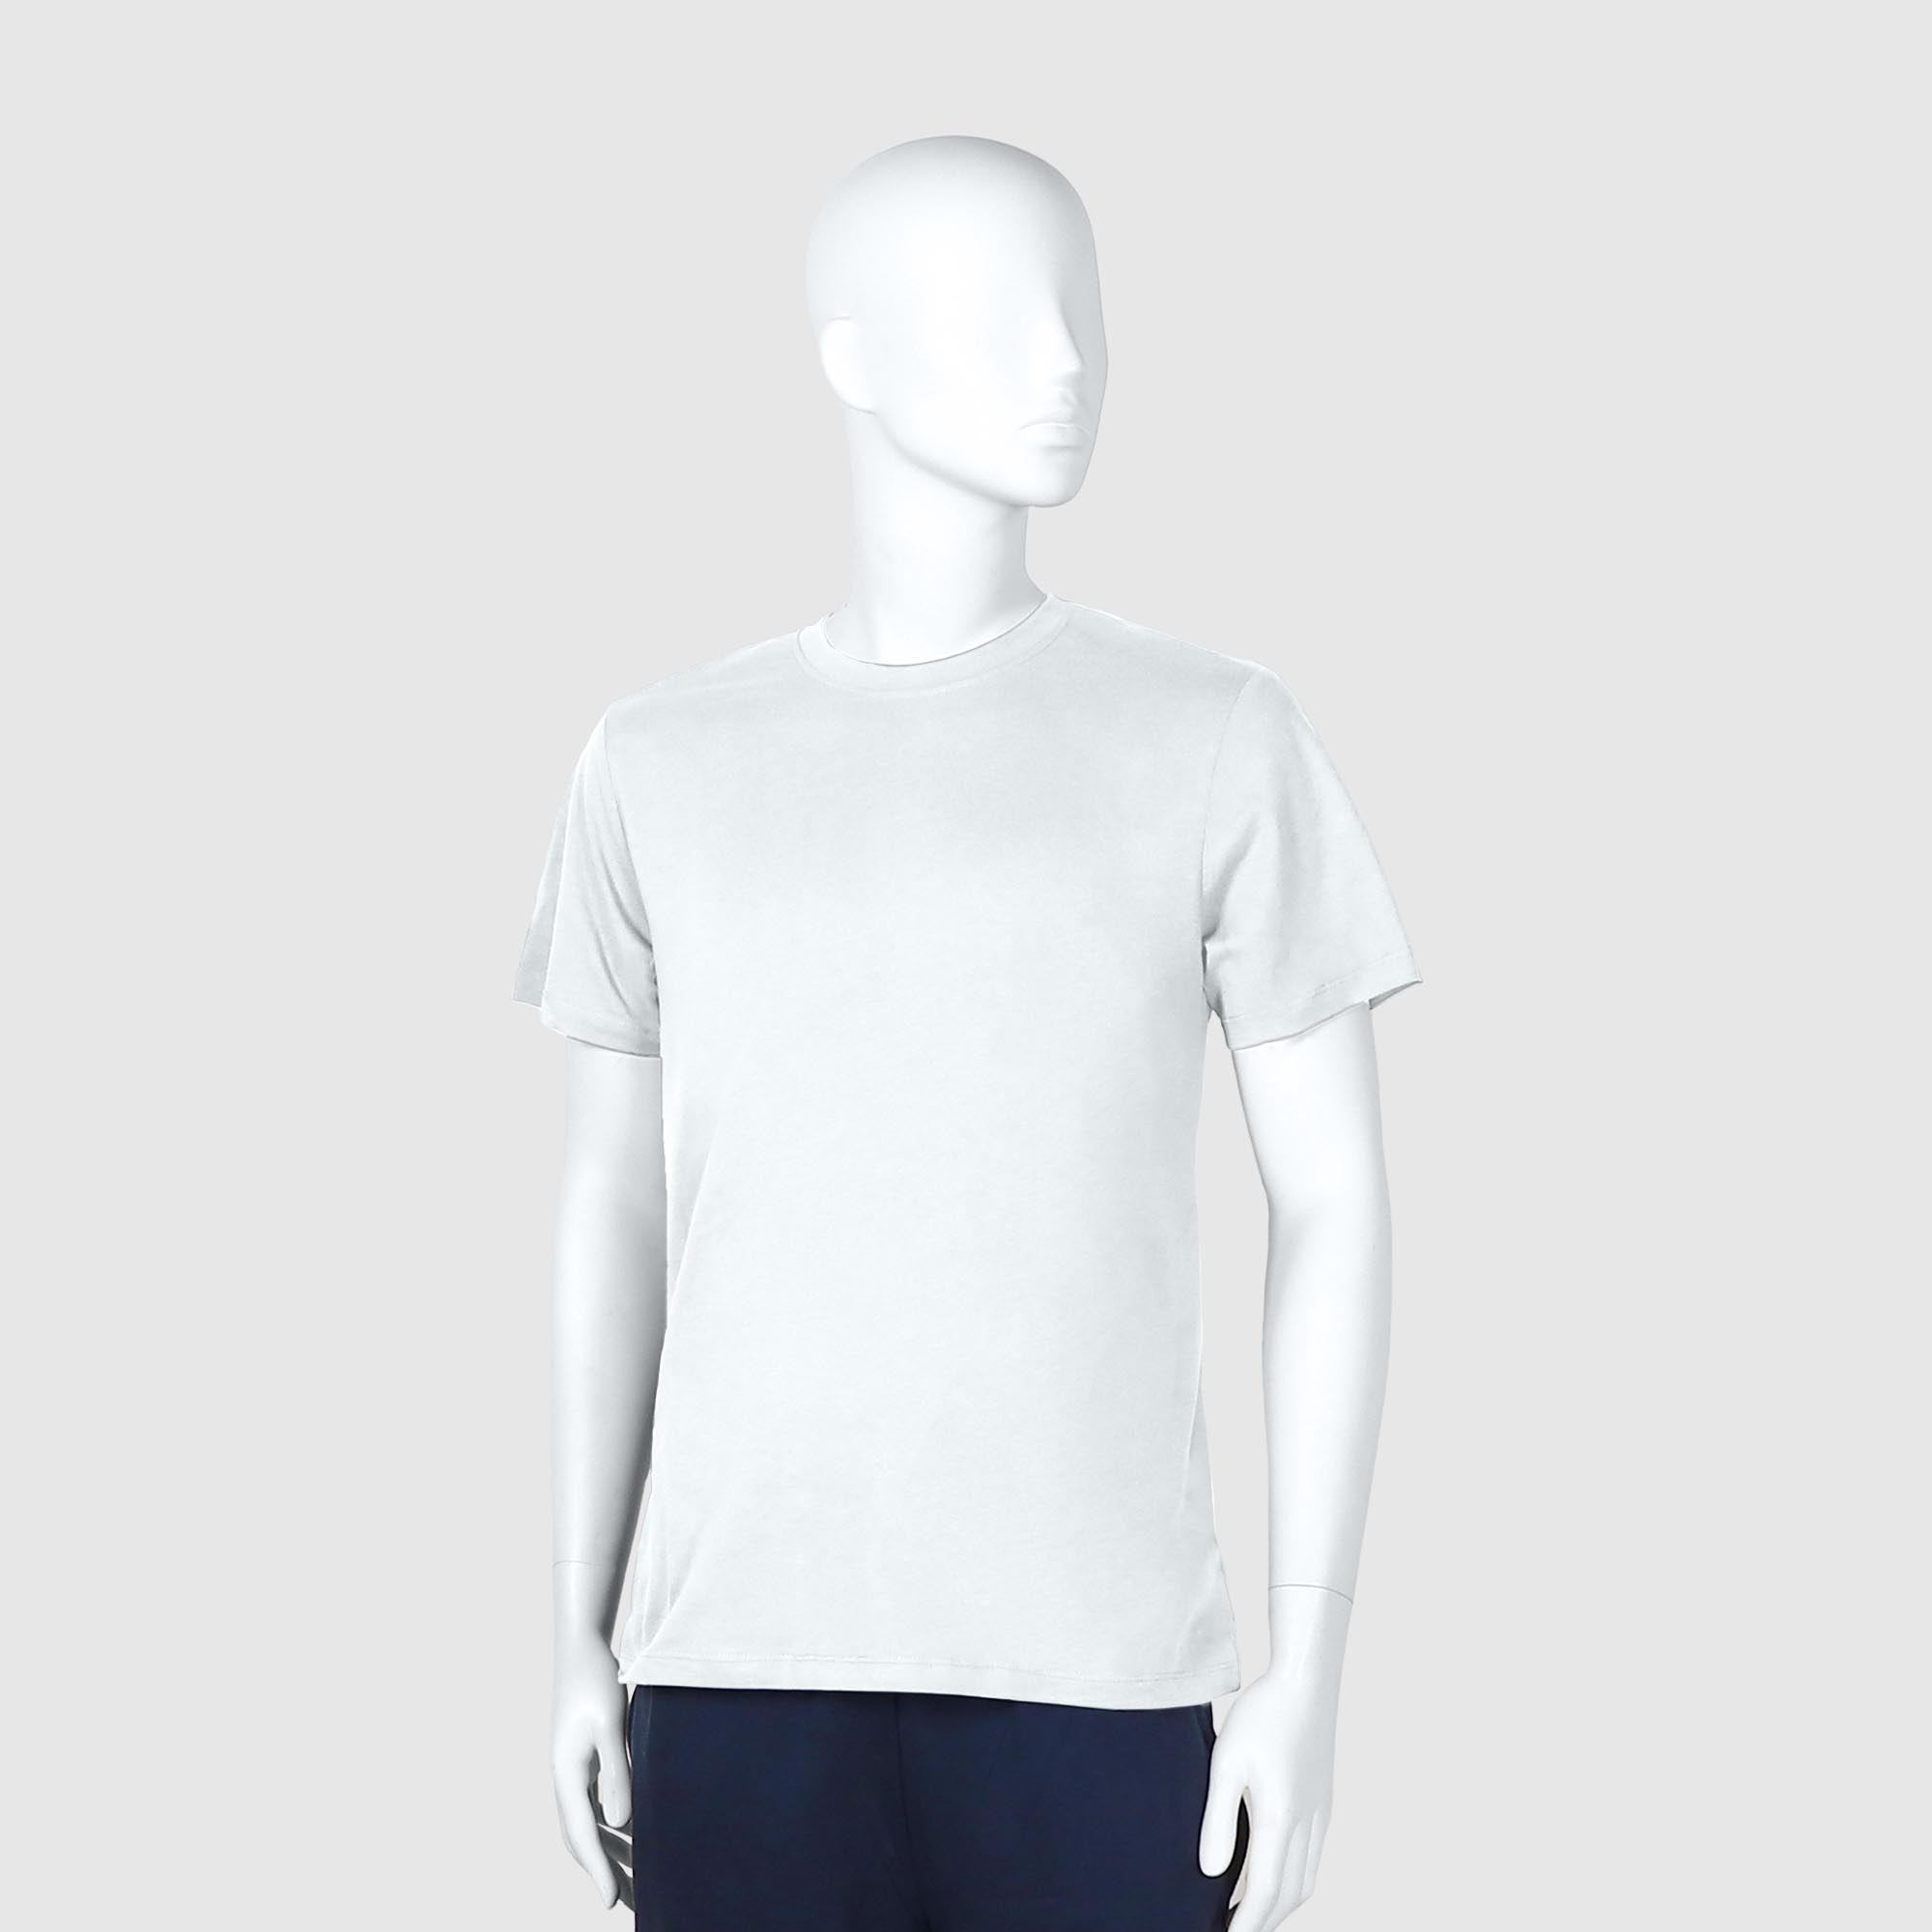 Мужская футболка Diva Teks белая (DTD-02), цвет белый, размер 54-56